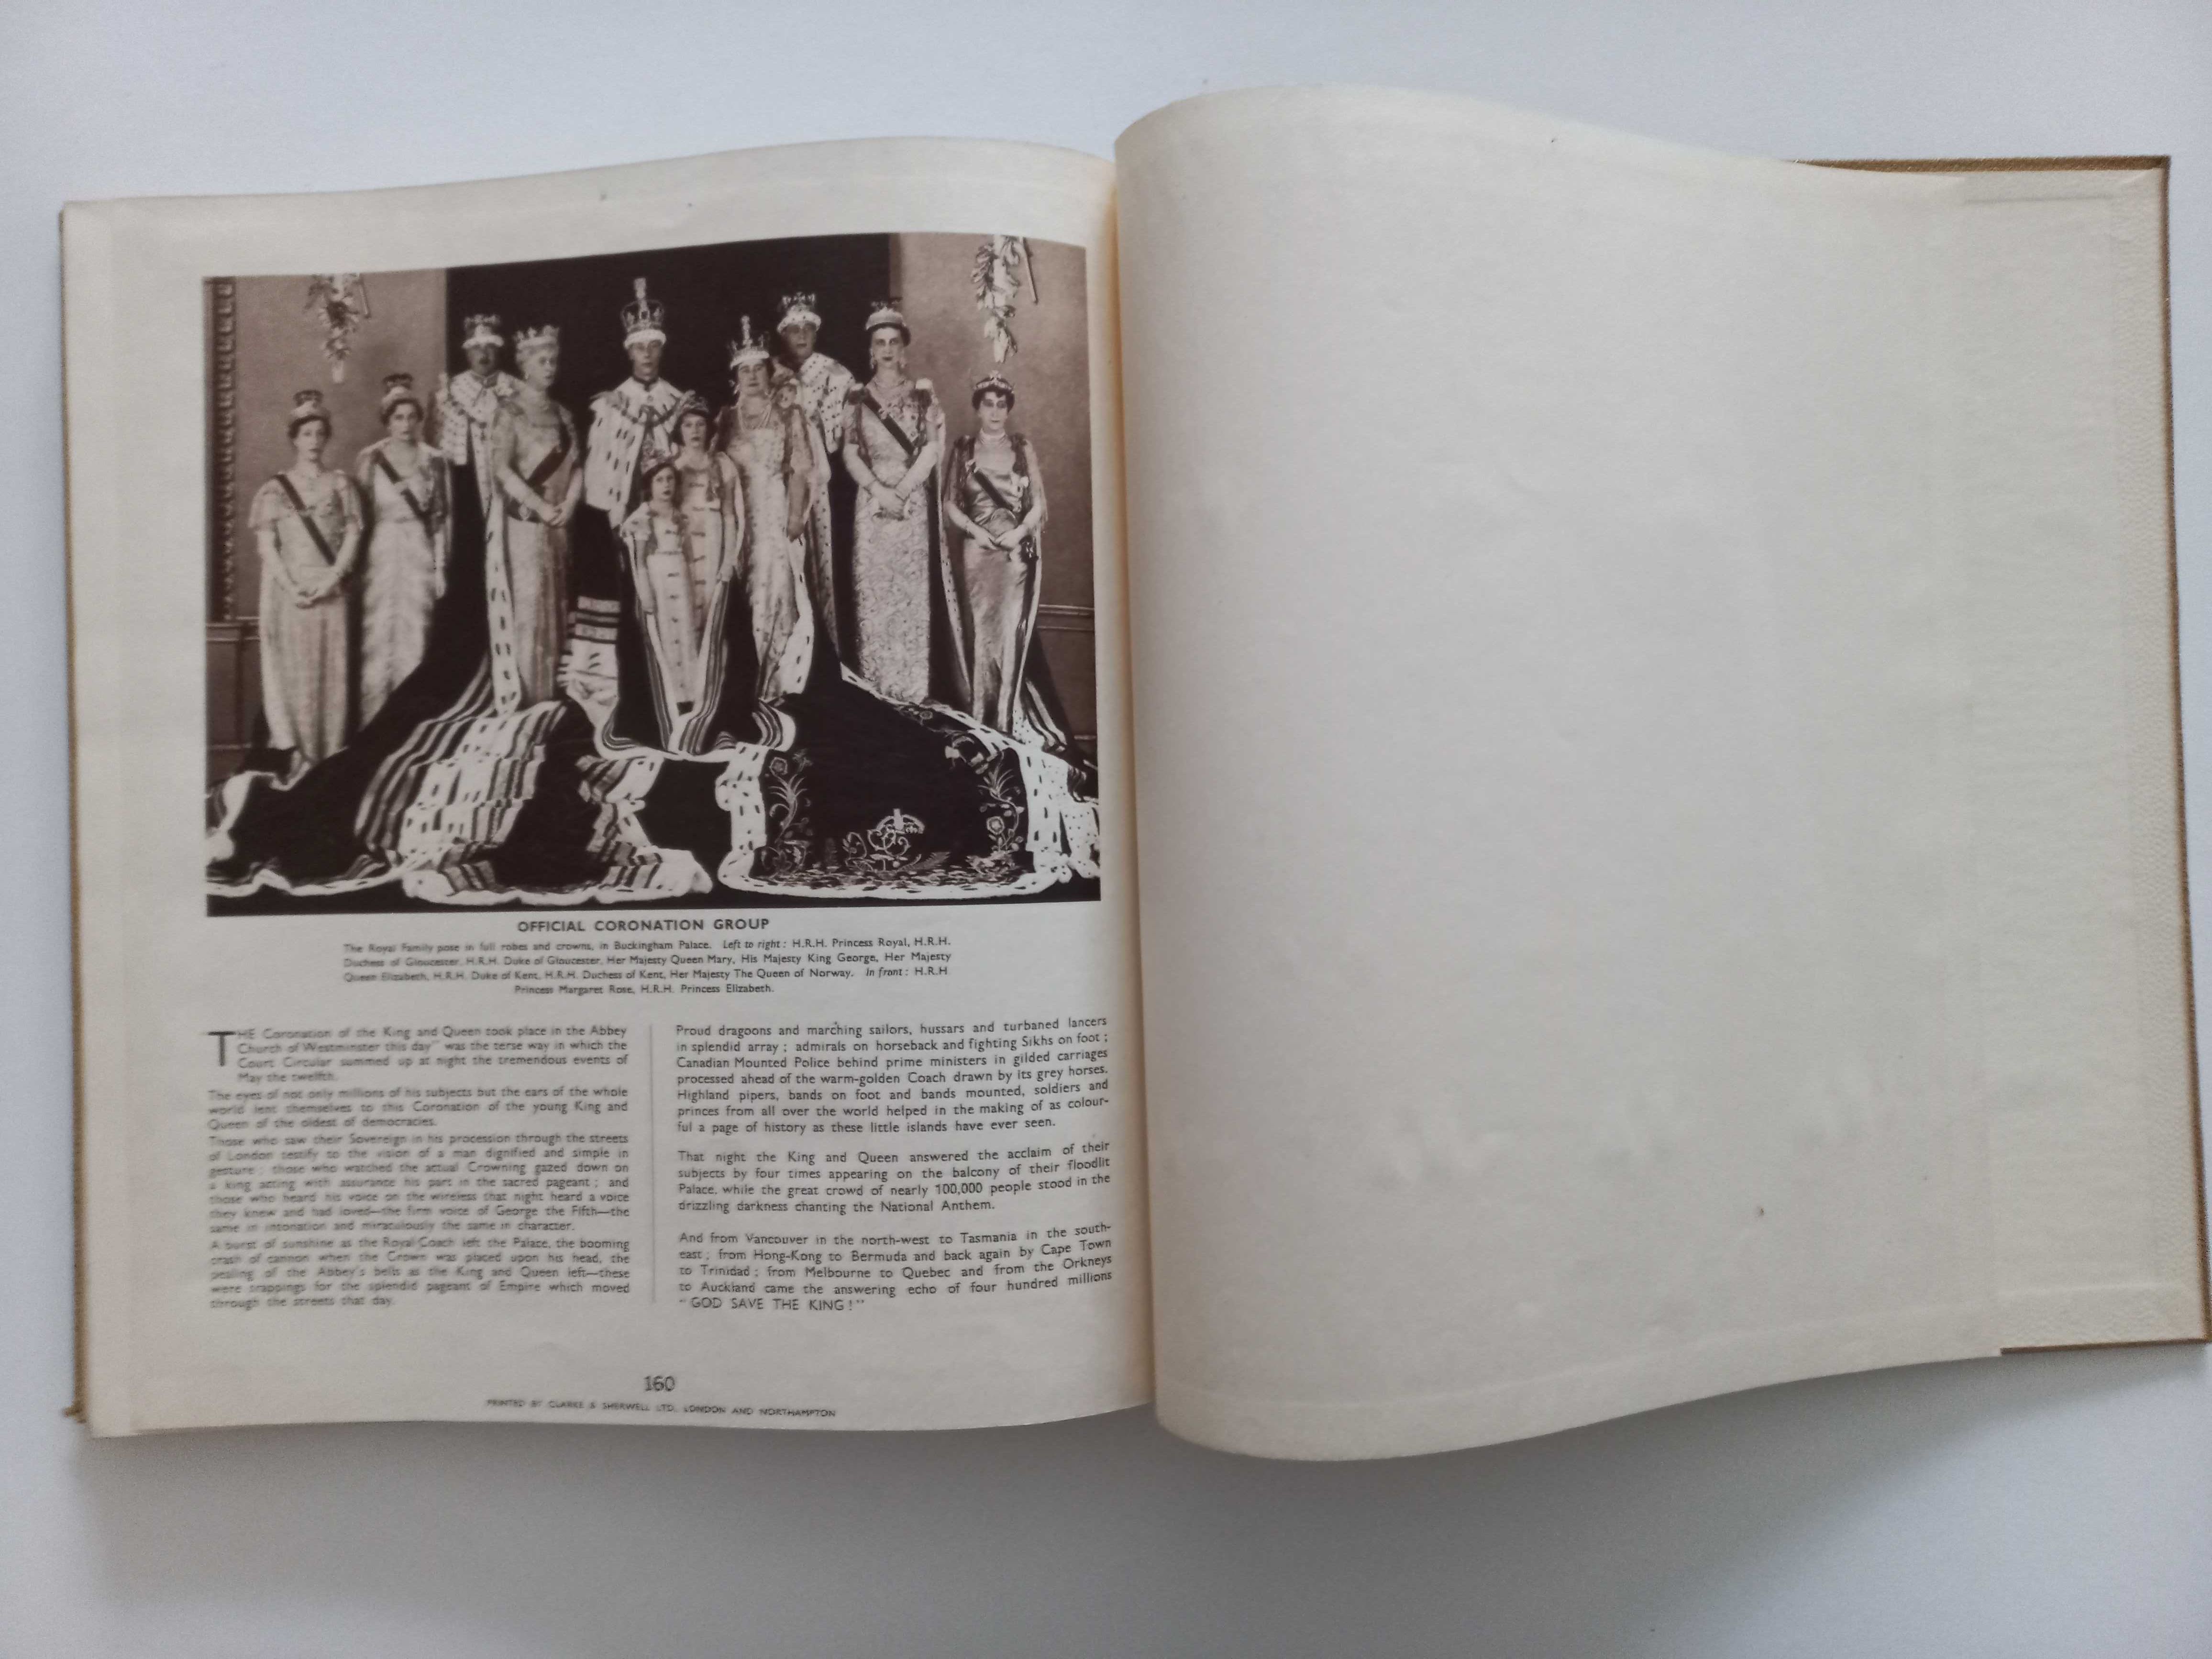 Carte engleza hardcover-Coronation Souvenir Book 1937